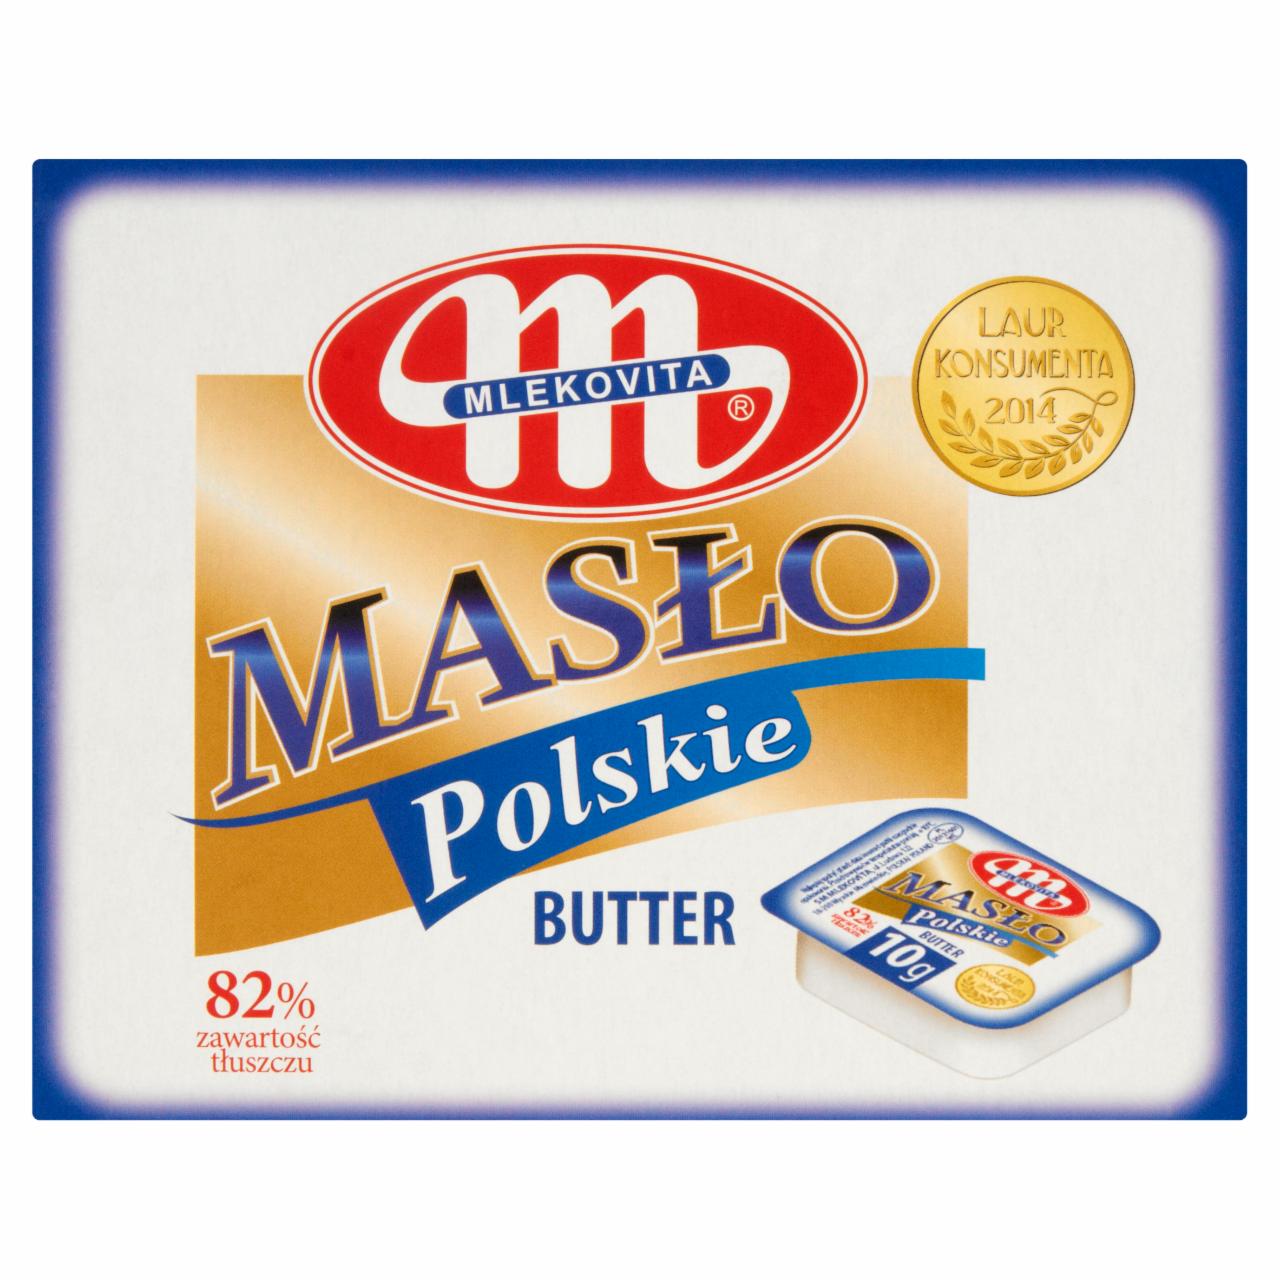 Zdjęcia - Mlekovita Masło Polskie 450 g (45 x 10 g)